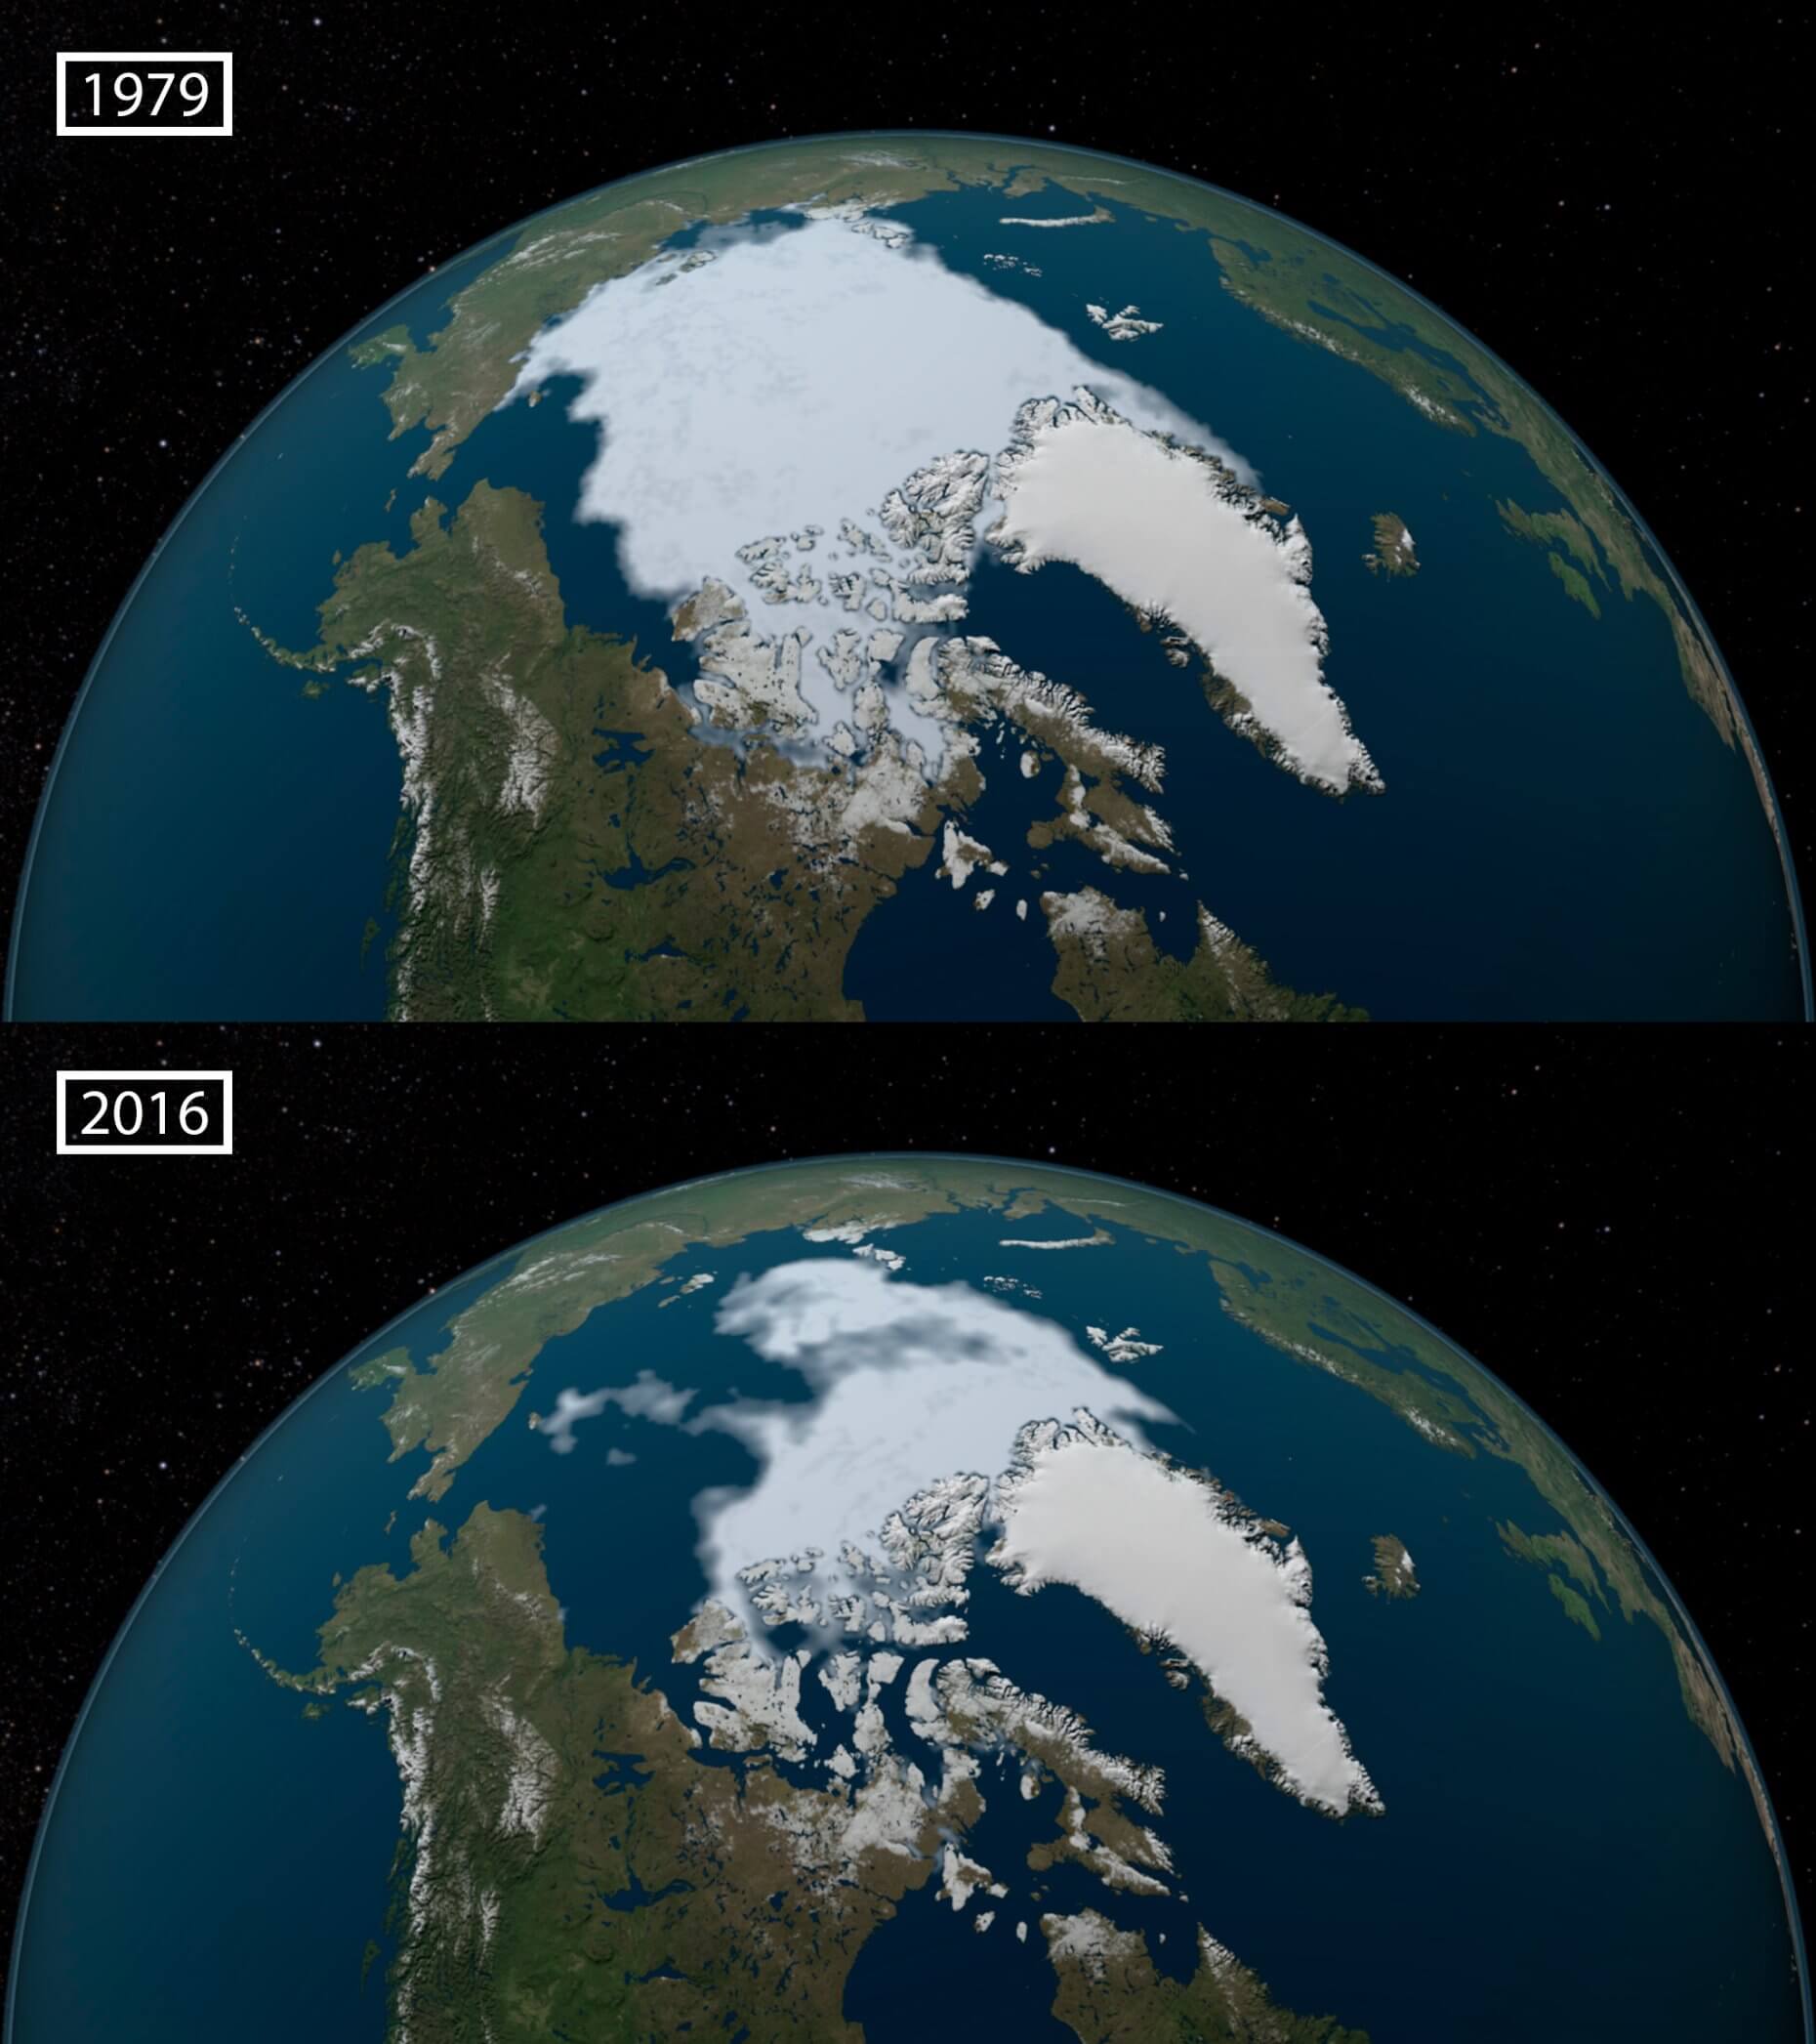 Uma montagem de duas imagens lado a lado das calotas polares em 1979 e 2016. É possível notar uma grande diferença entre a quantidade de gelo entre as duas épocas, a quantidade de área congelada em 1979 é consideravelmente maior.